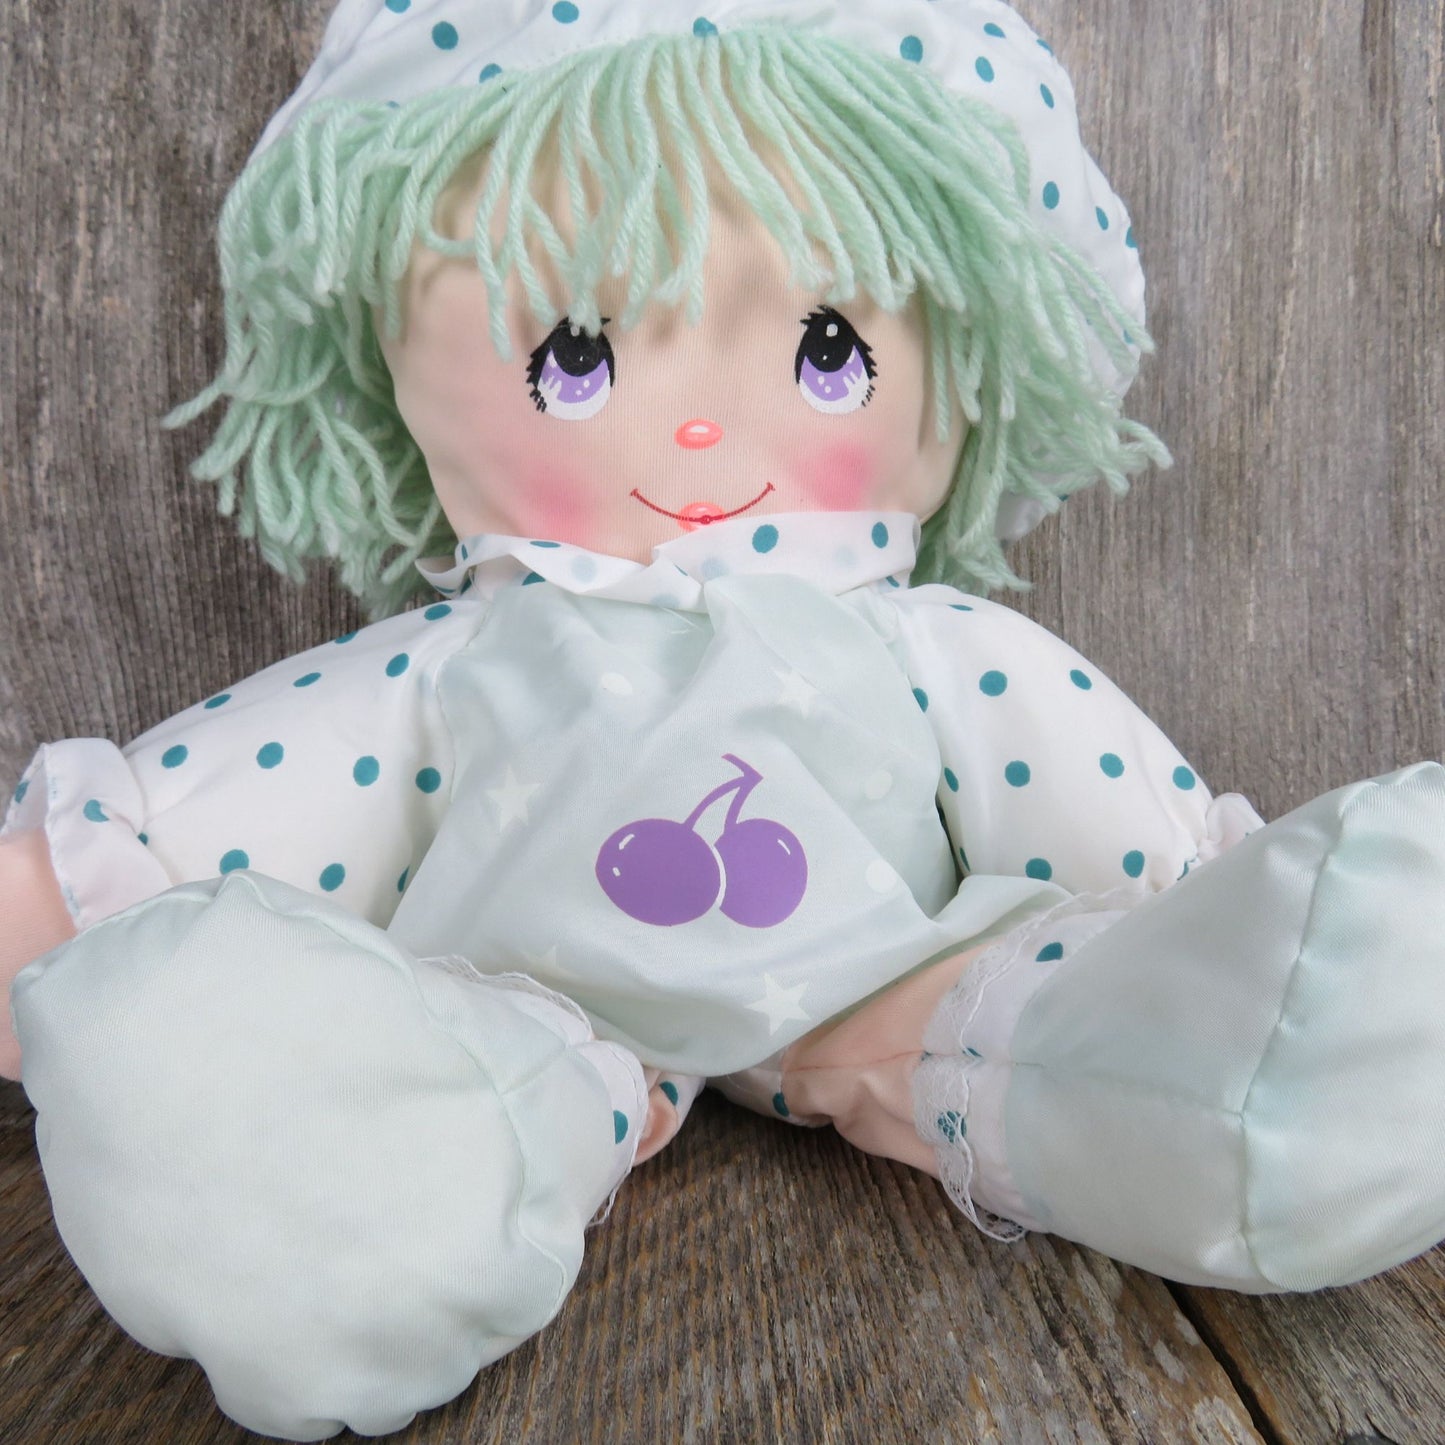 Vintage Dolly Mine Soft Body Doll Plush Green Polka Dot Nylon Slick Made Well Toy Hat